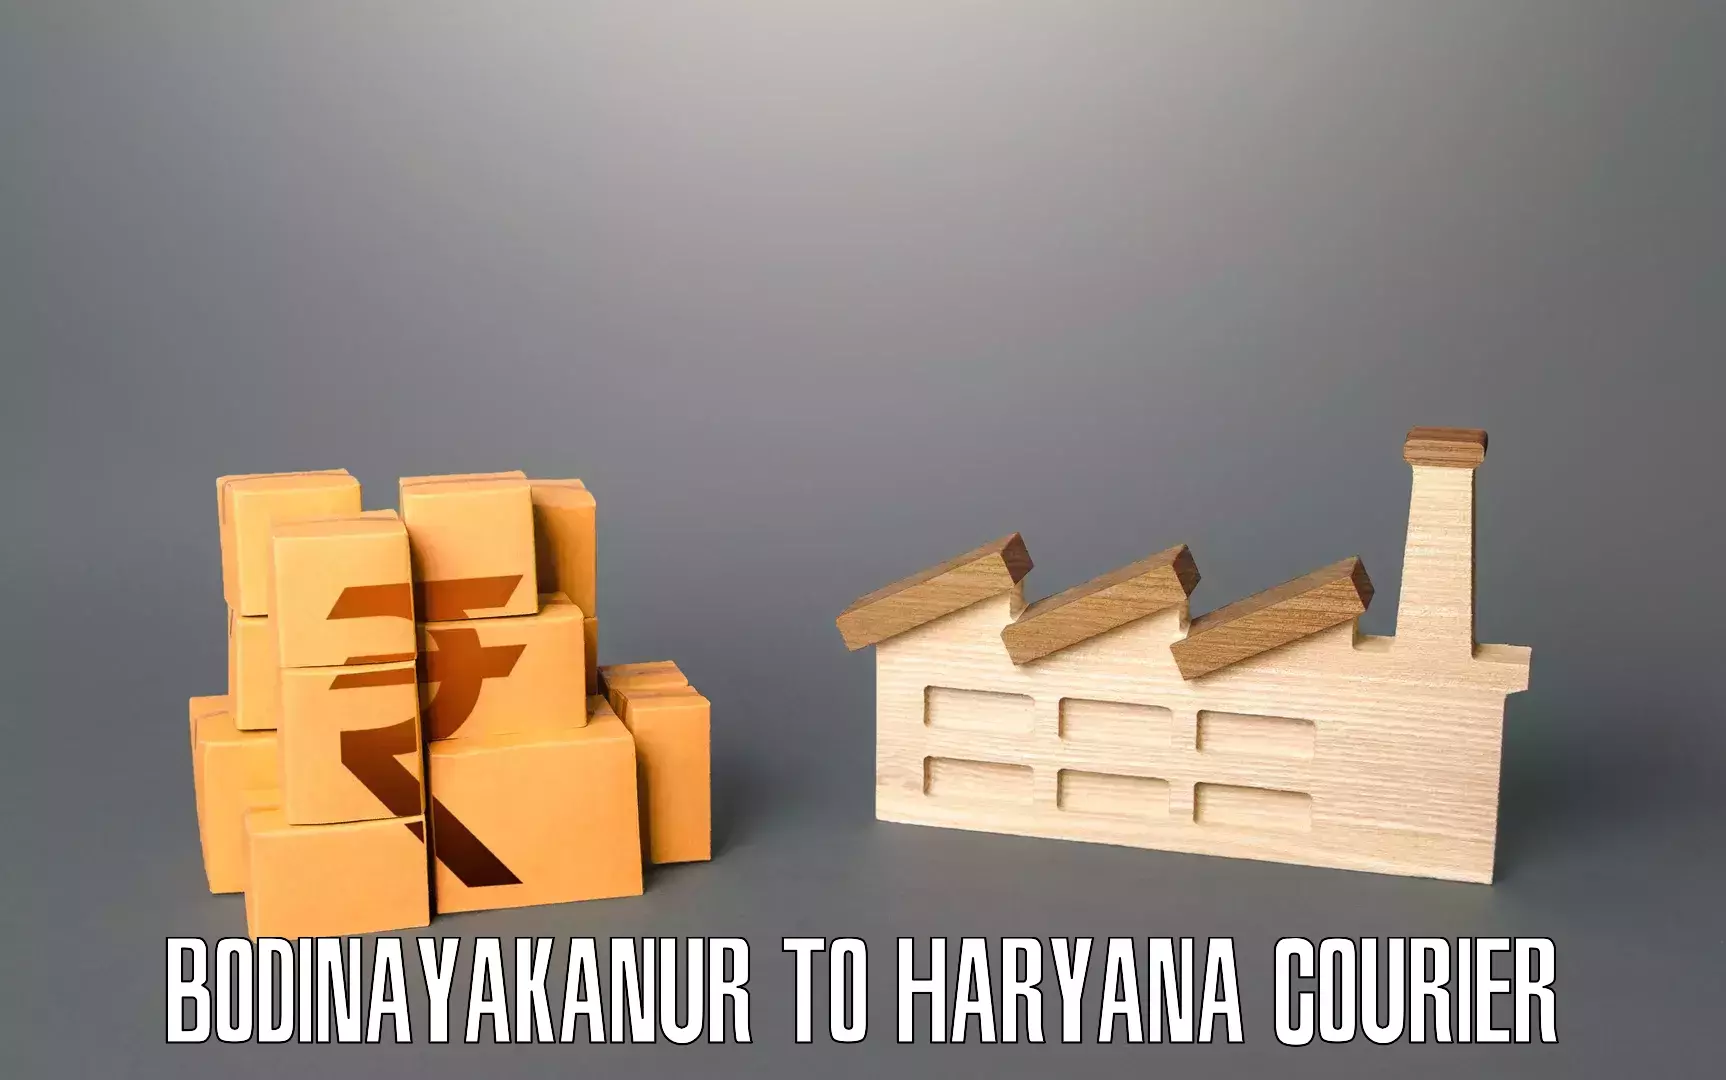 Expert furniture movers Bodinayakanur to Chirya